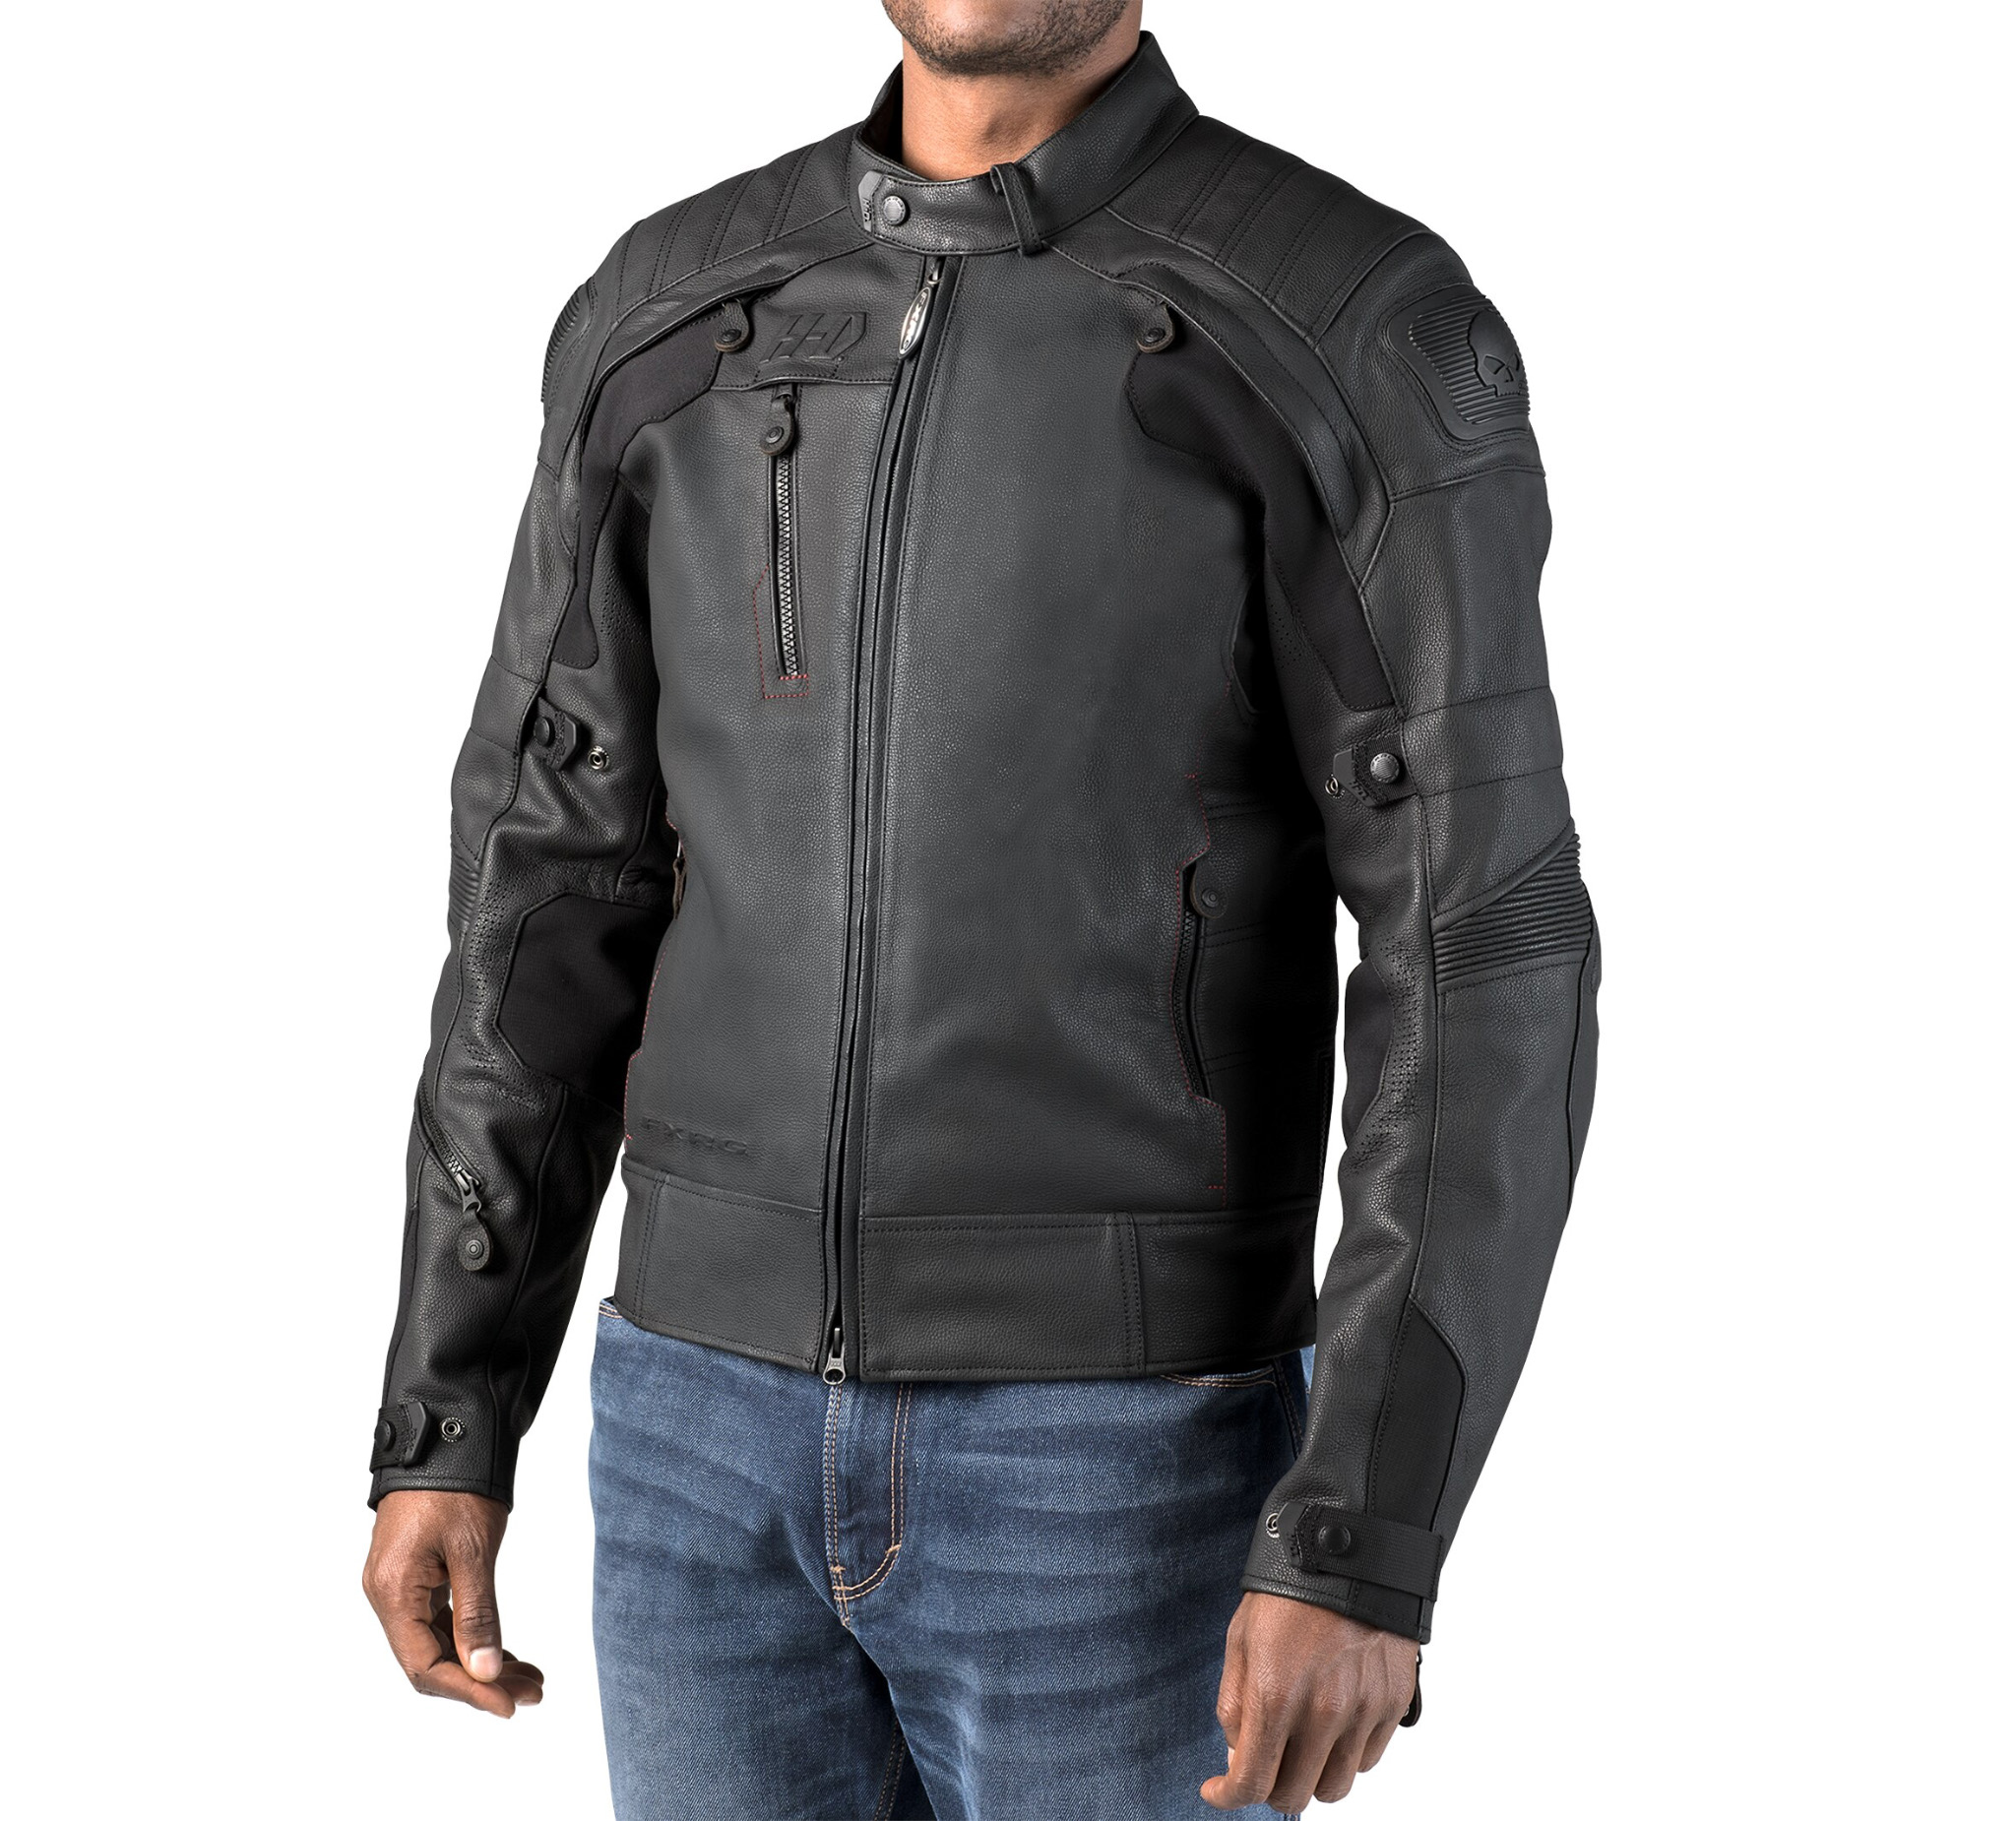 FXRG Leather Jacket